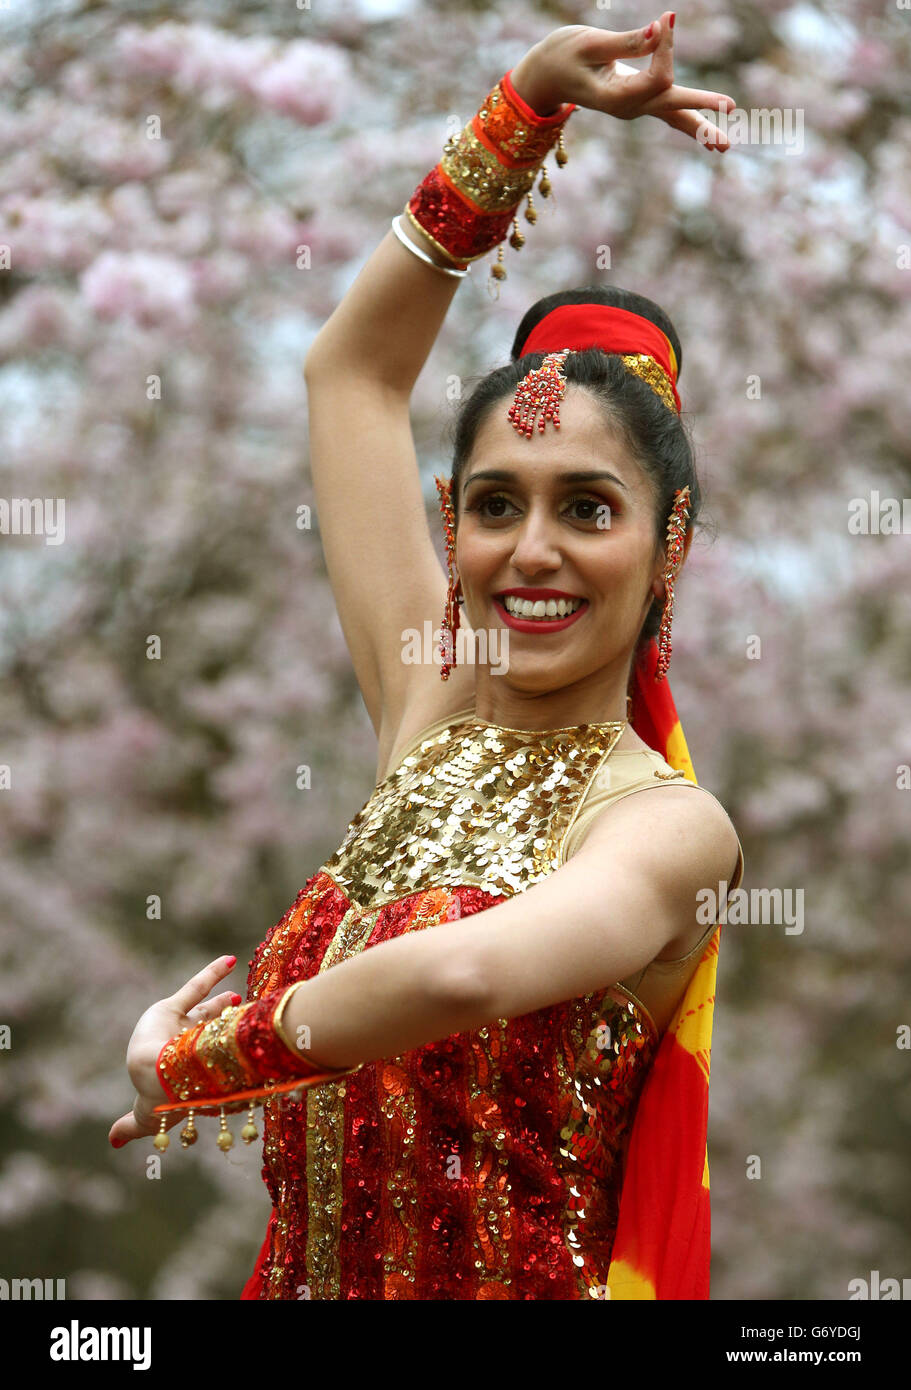 Pooja Berman, danseuse de Bollywood, à l'occasion du lancement de Glasgow Mela, le plus grand festival multiculturel d'Écosse qui se tient au parc Kelvingrove de la ville pour sa 24e année consécutive du 7 au 8 juin. Banque D'Images